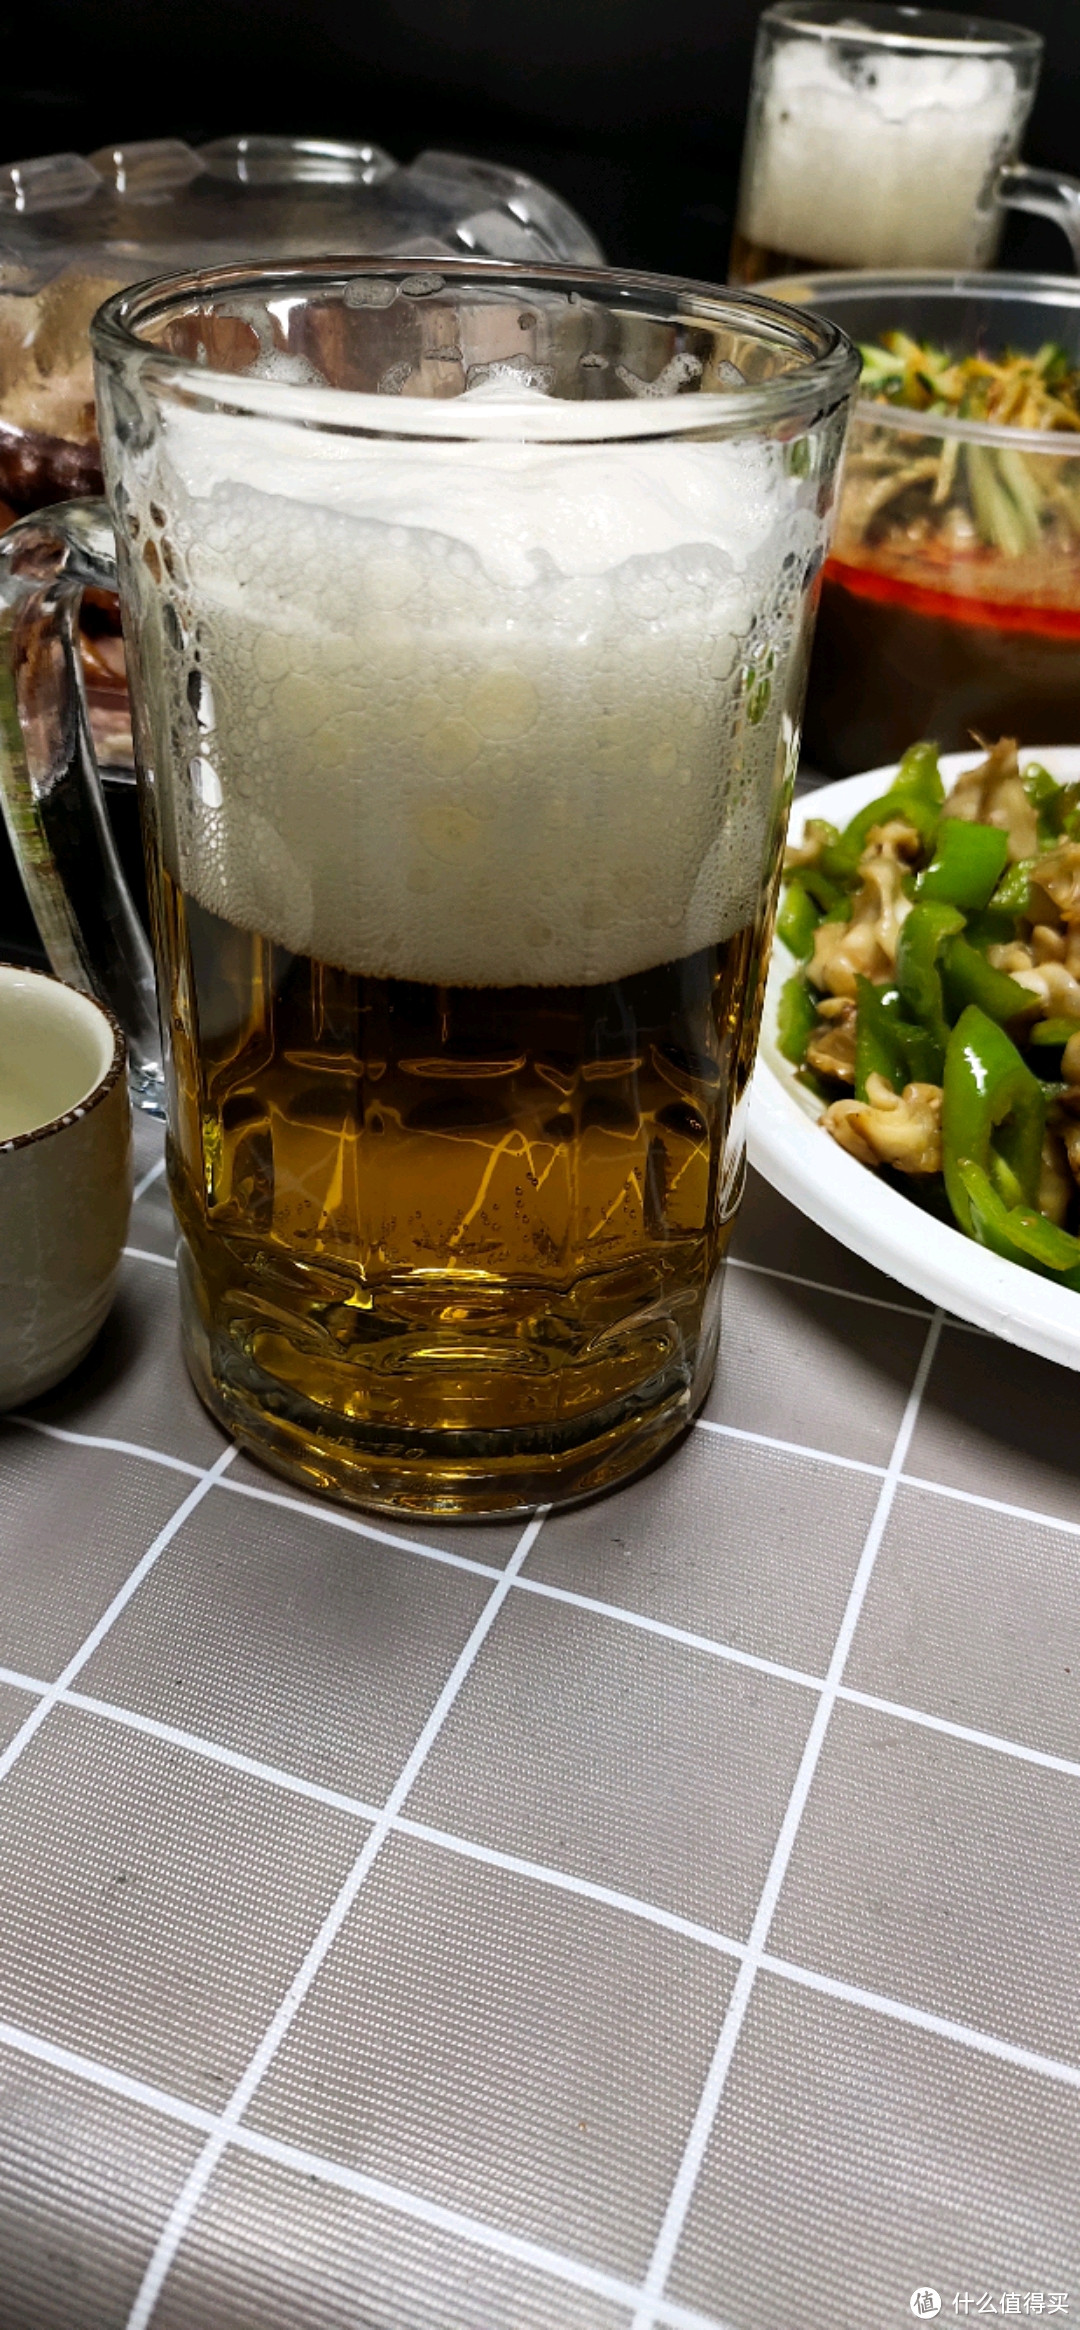 不足100日元购入,从神户转产名古屋的进口麒麟限定版秋味啤酒第一次试